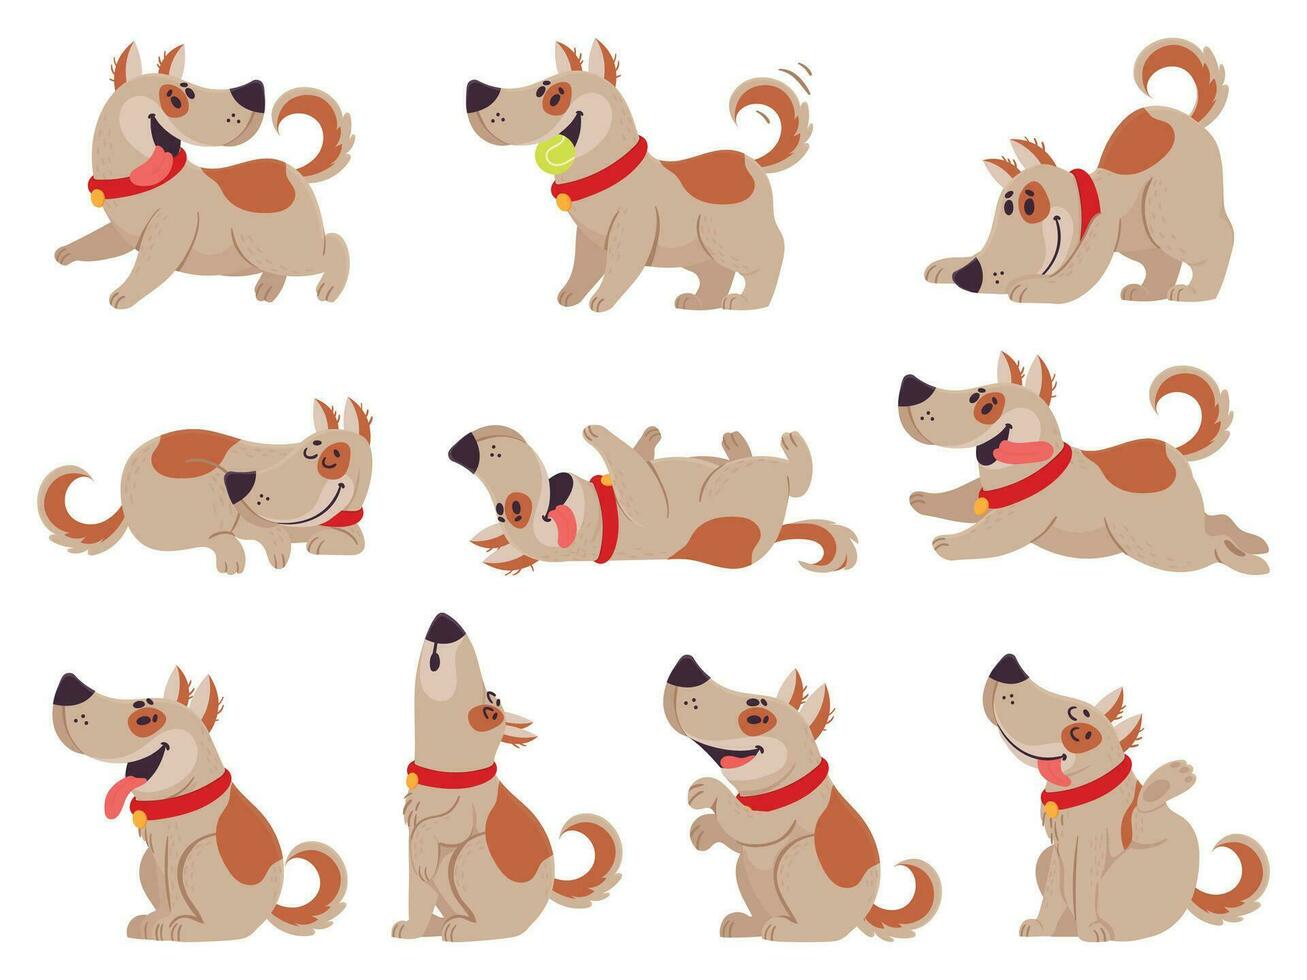 dibujos animados perro. linda perros en diario rutina comiendo, saltando menear y durmiendo, corriendo y ladrido, diferente poses mascota actividad vector colocar.